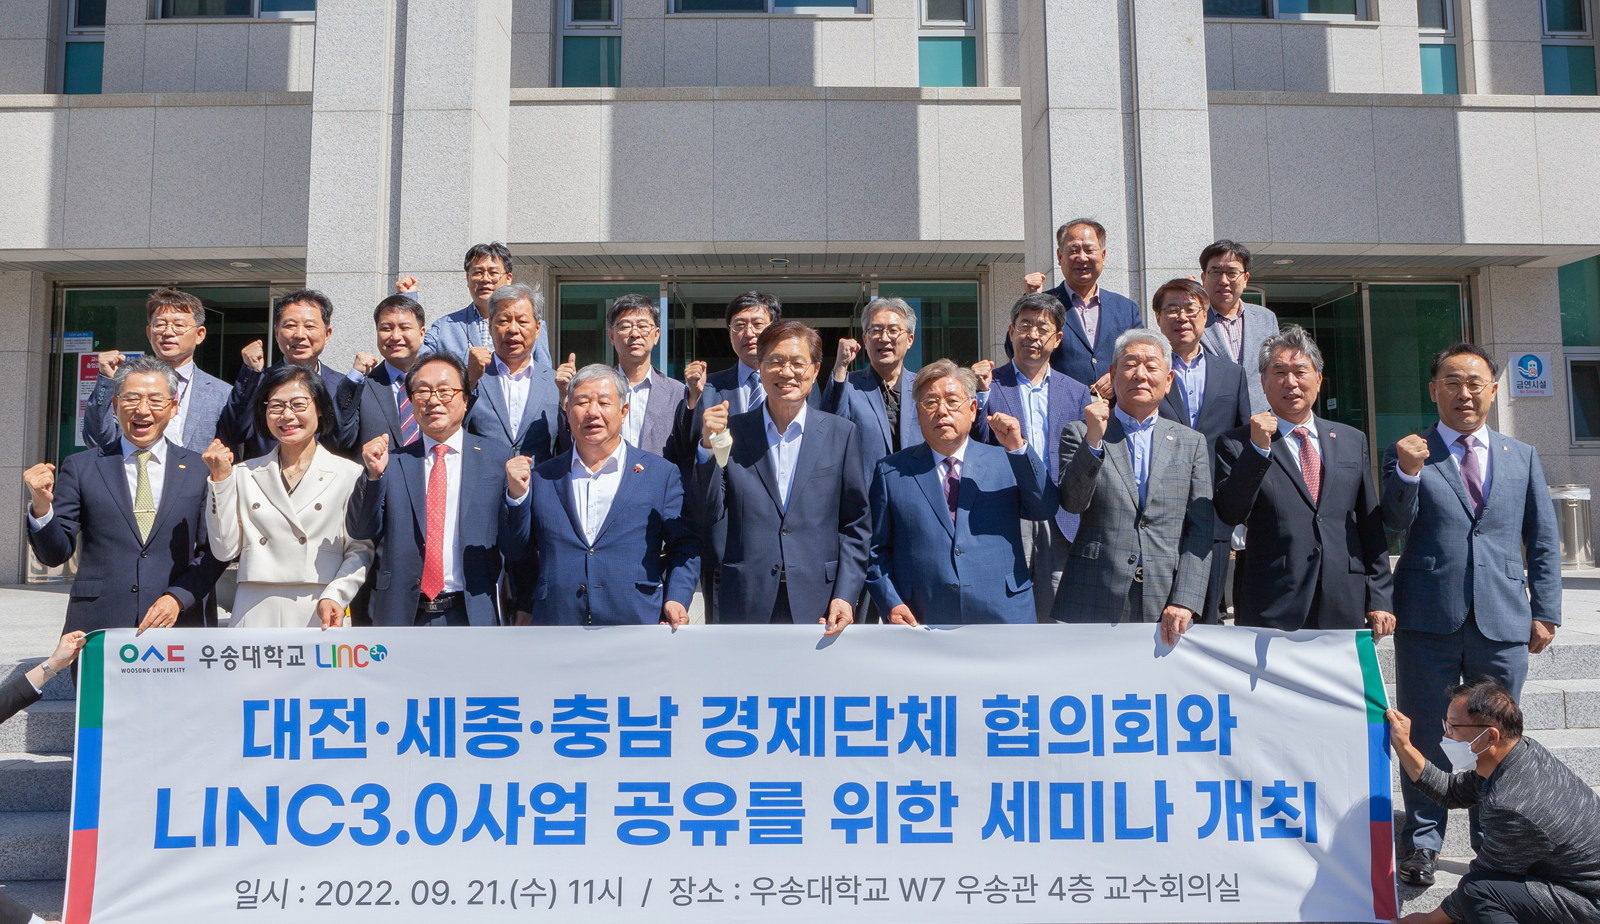 우송대, 대전경제단체 협의회와 LINC3.0 사업 공유 세미나 개최